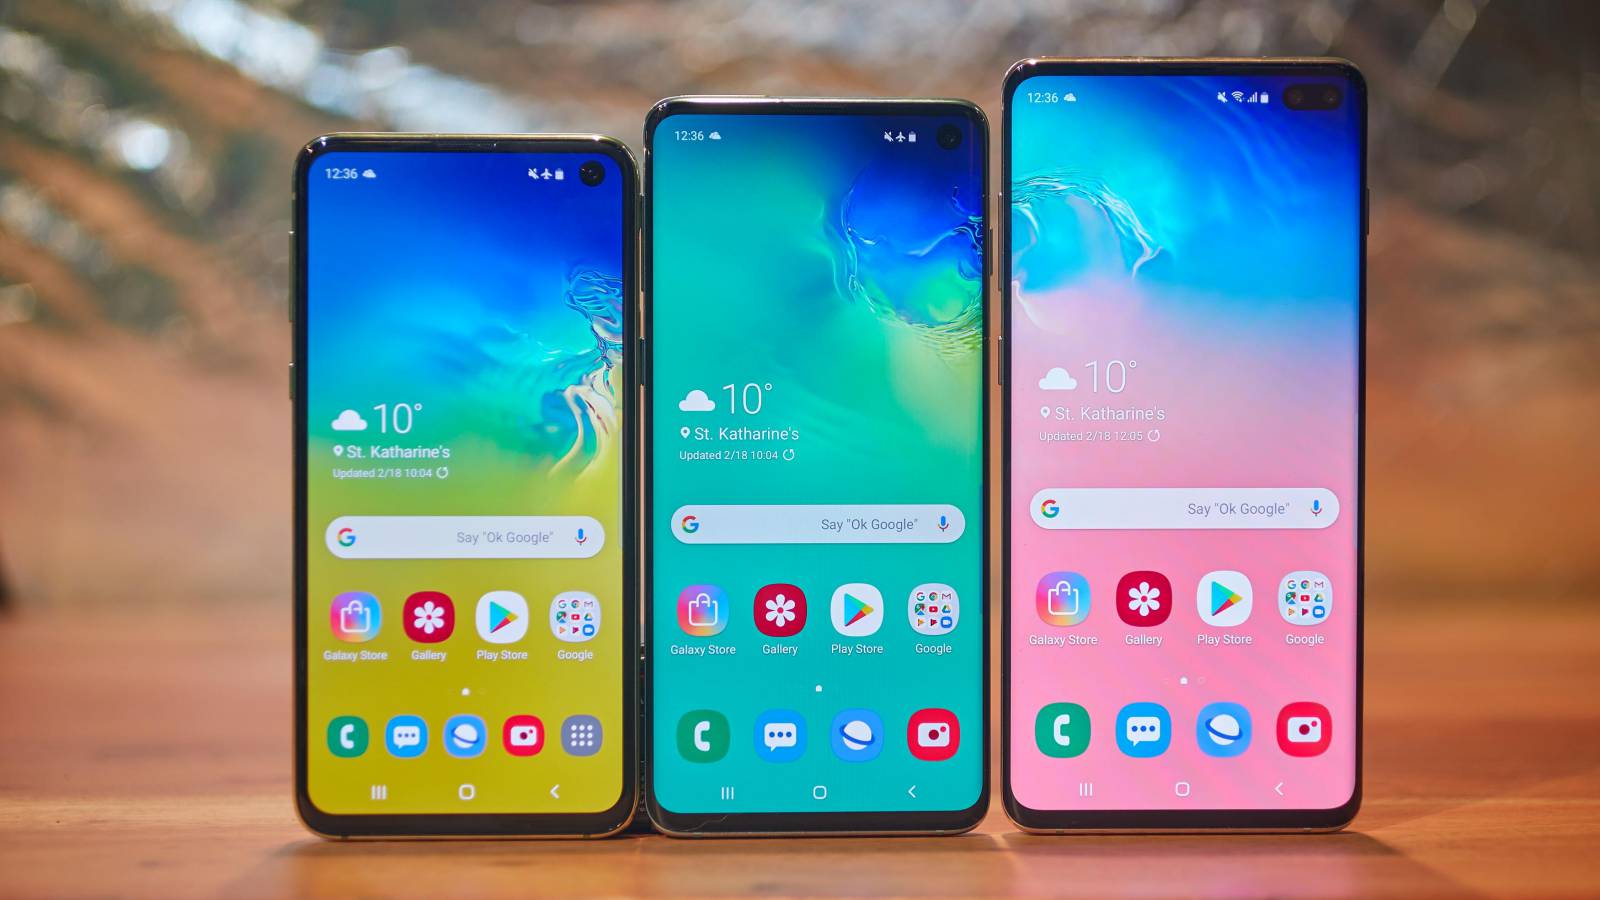 Actualización del Samsung Galaxy S10 de septiembre de 2019